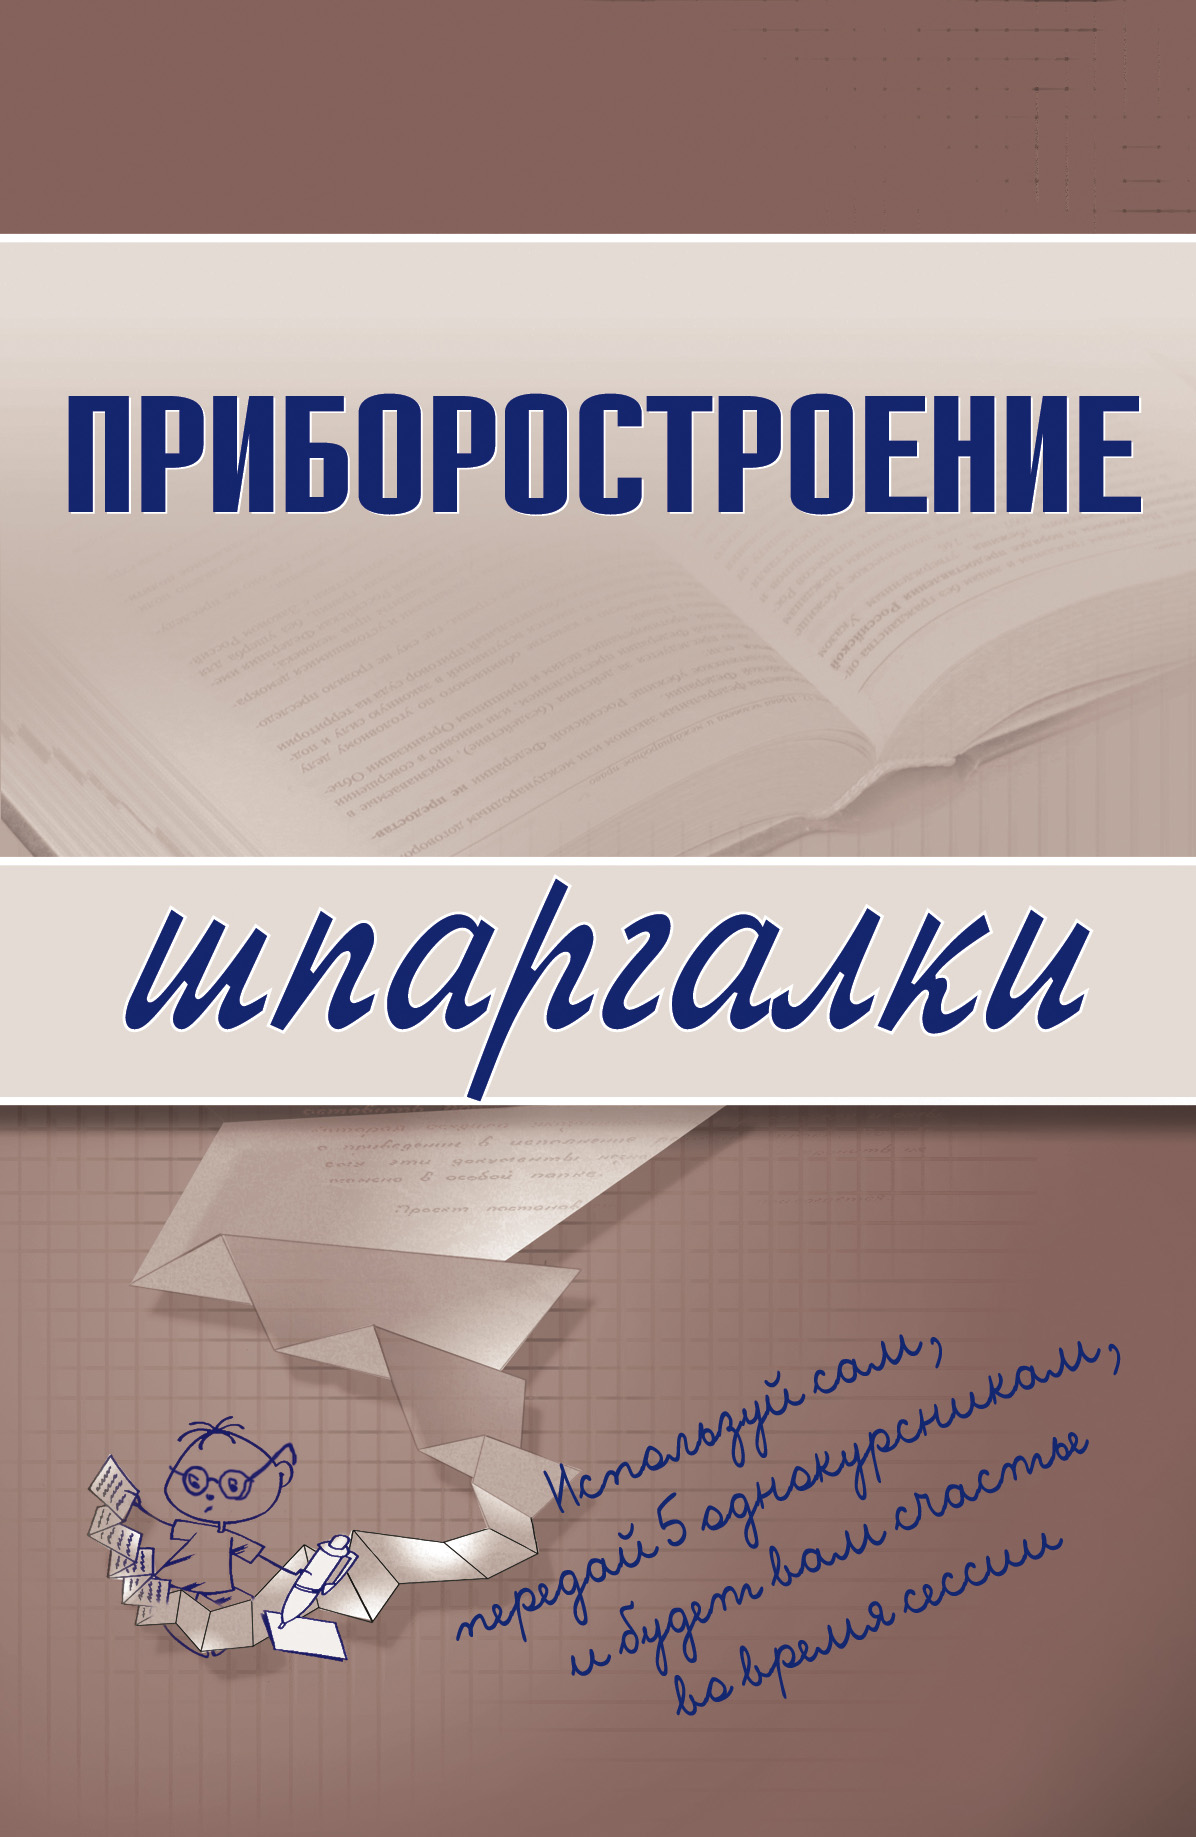 Книга Приборостроение из серии Шпаргалки, созданная М. Бабаев, может относится к жанру Техническая литература. Стоимость книги Приборостроение  с идентификатором 179762 составляет 39.98 руб.